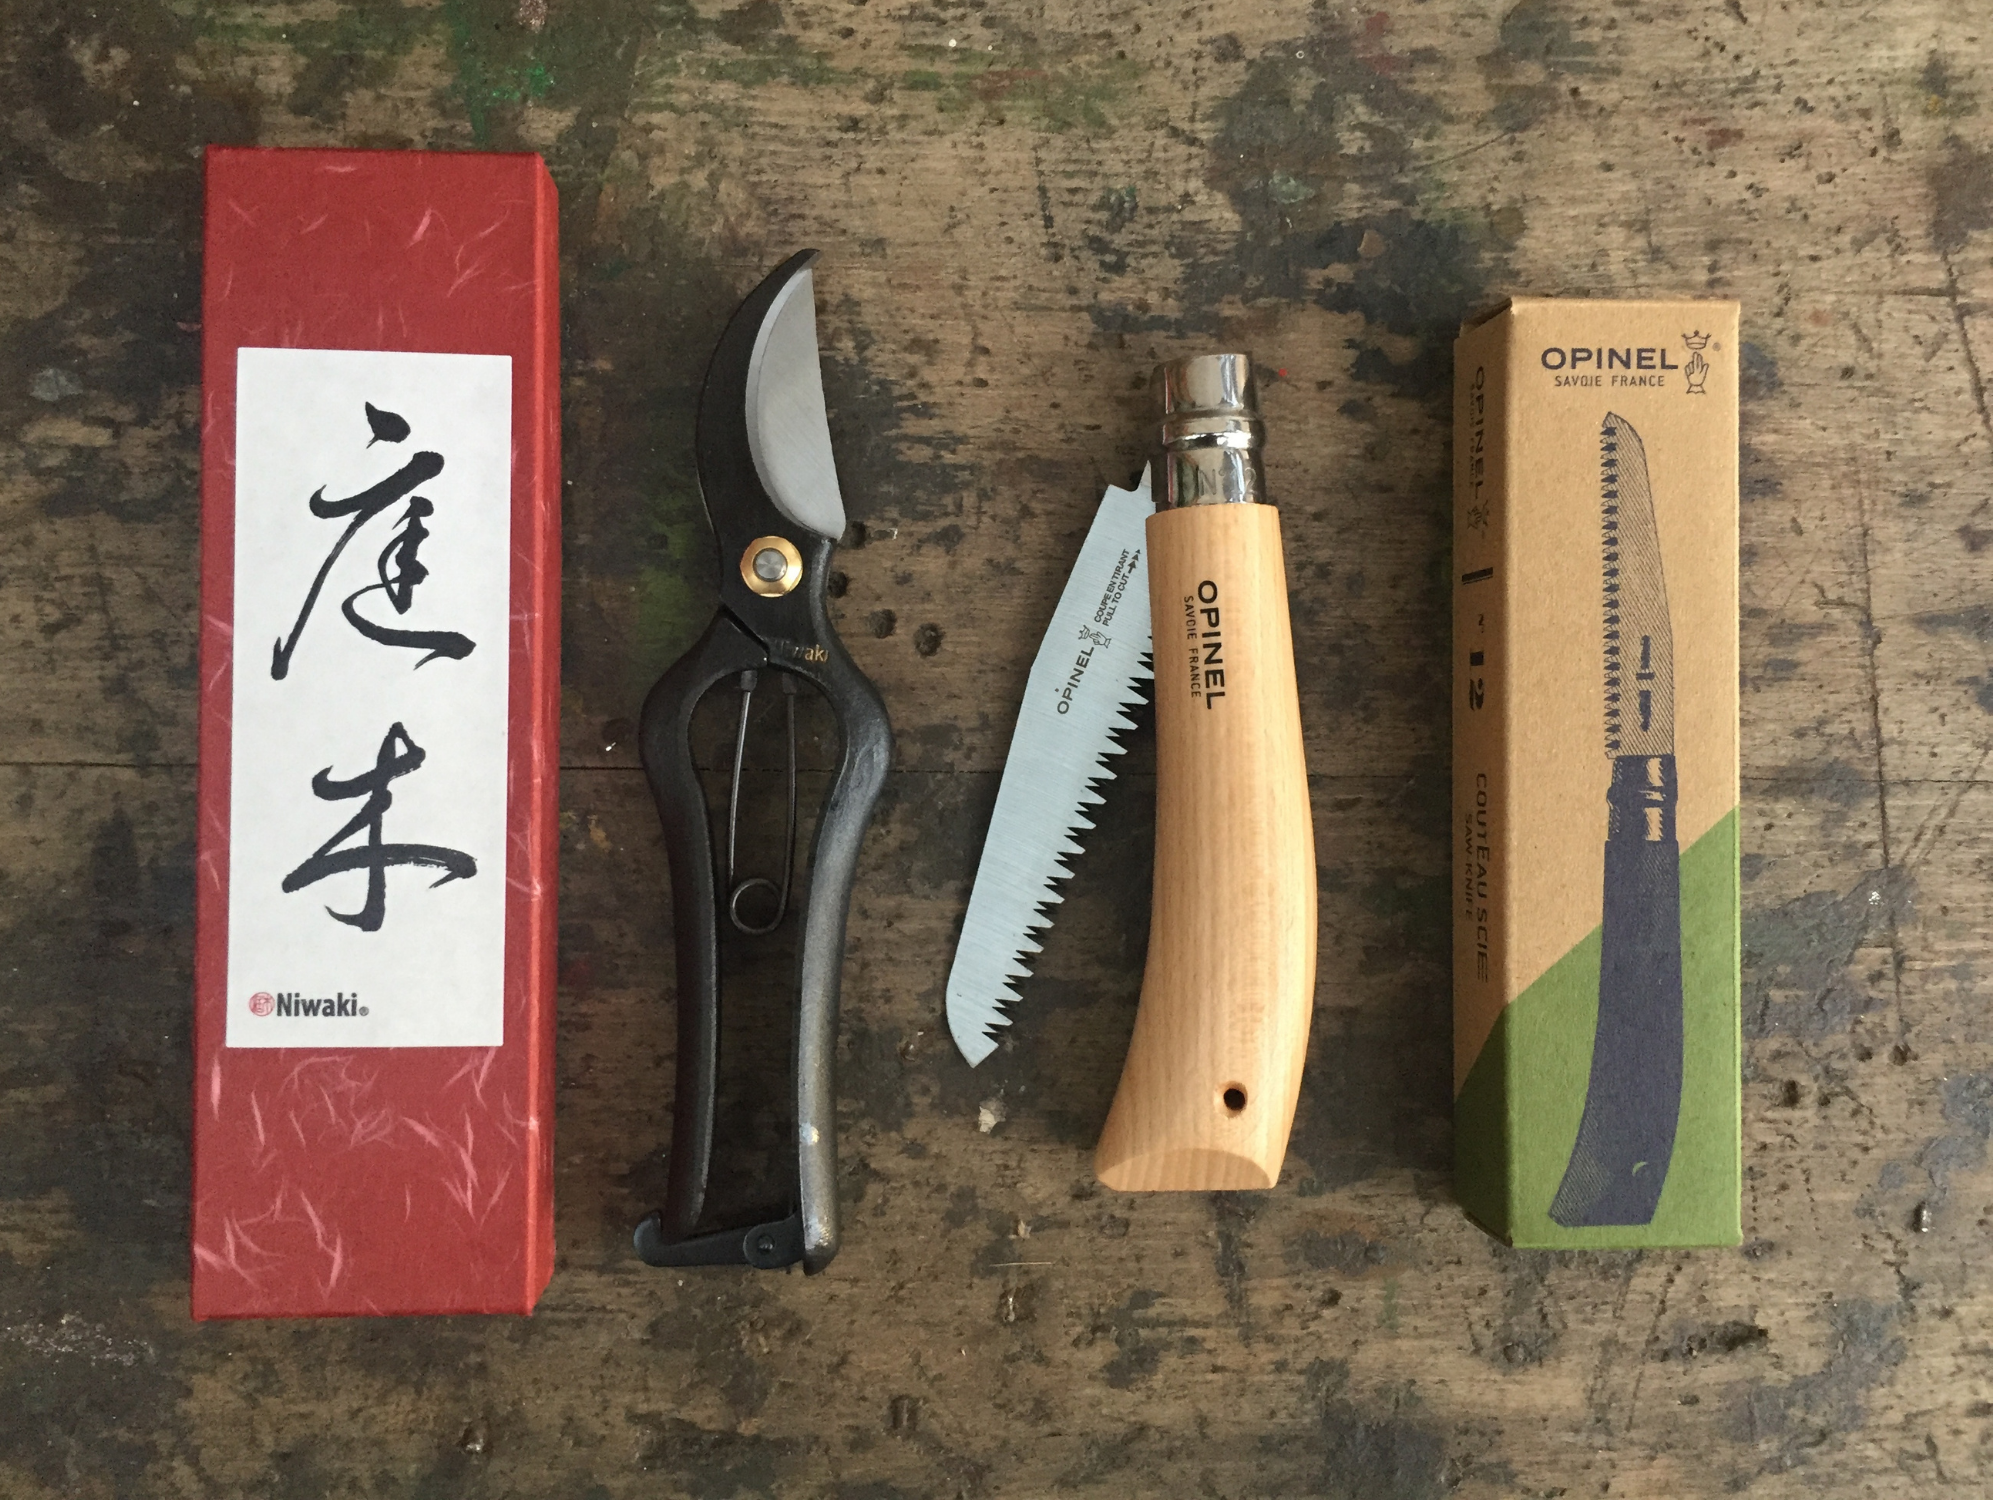 Autumn Garden Tool Kits